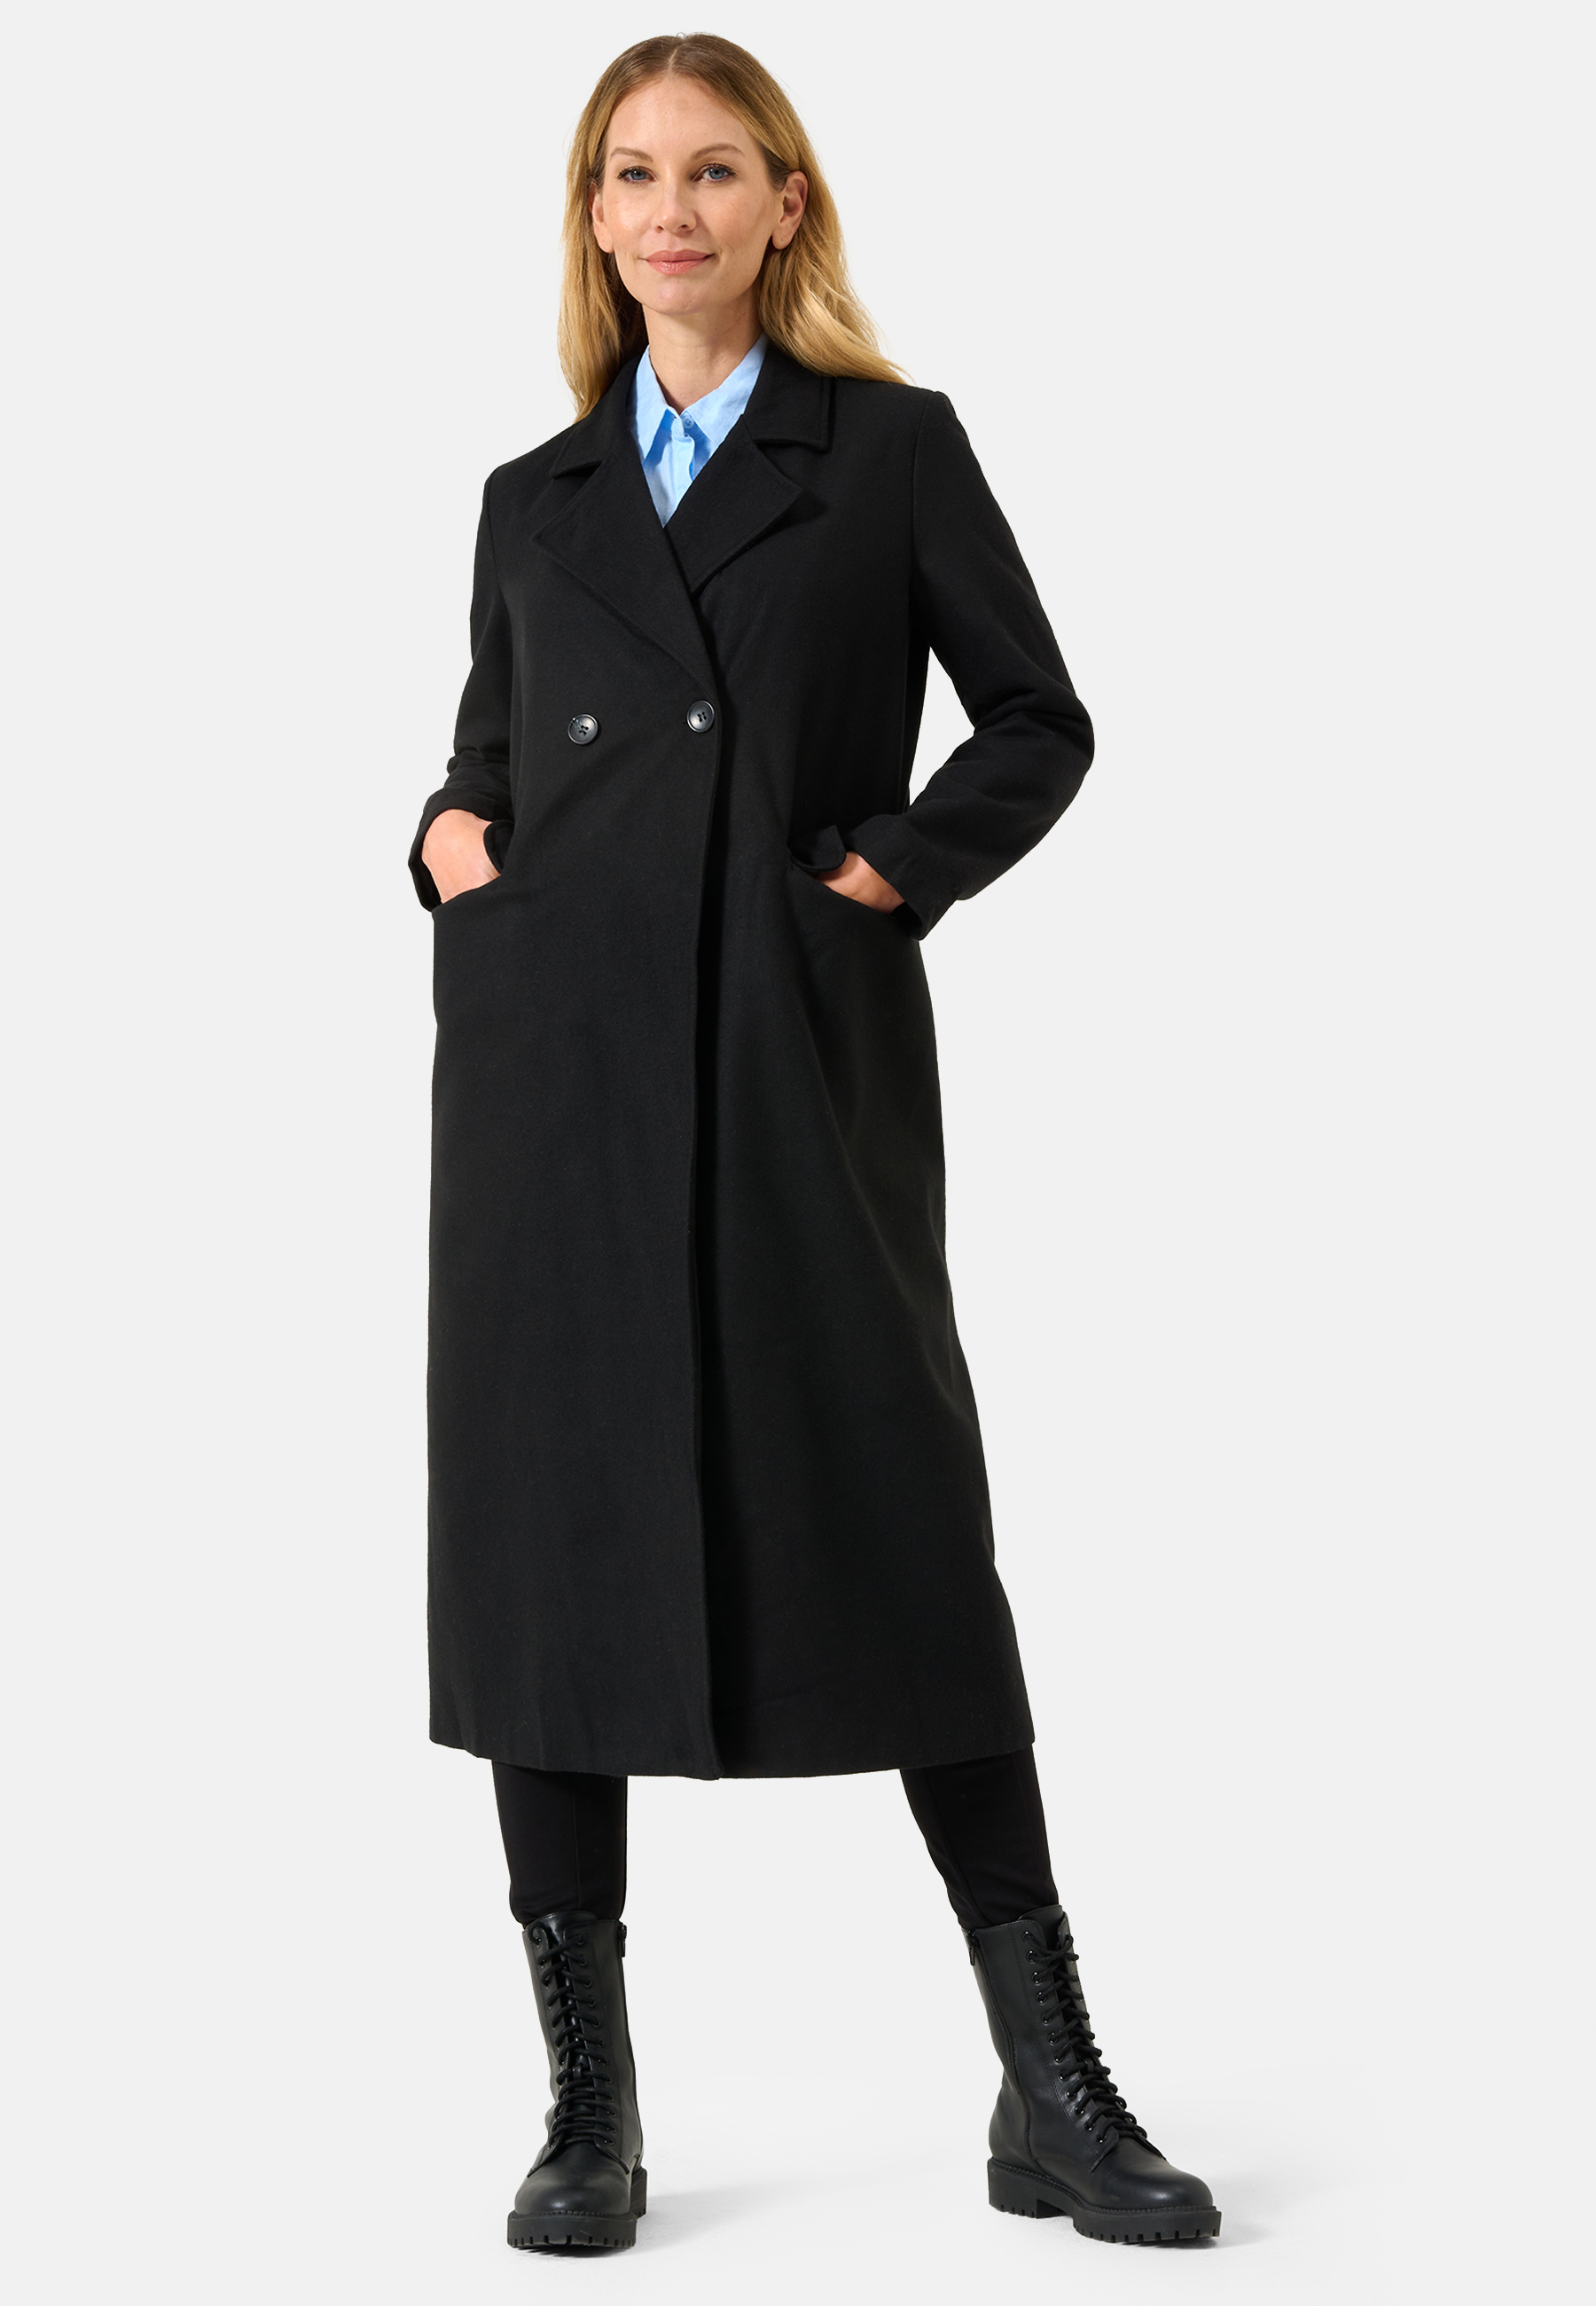 Damen Textil Mantel Alberta in Schwarz von Ricano, Detailansicht vorne, Reversekragen mit V-Ausschnitt, 7/8 Lang, Zwei Einklapp Taschen vorne, Zwei Knöpfe für Verschluss